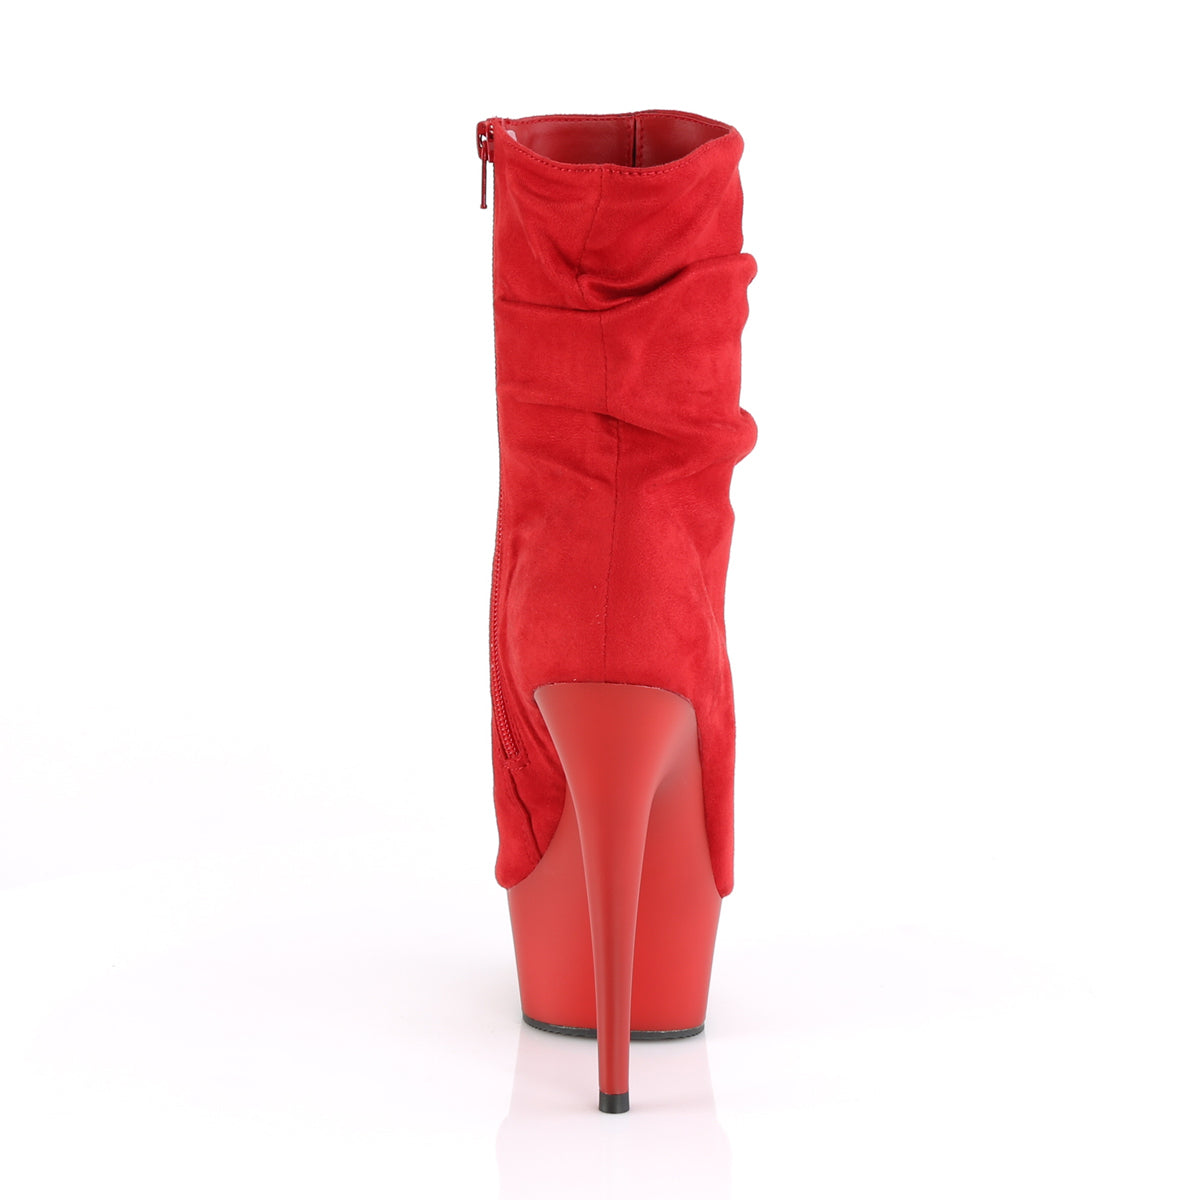 Pleaser Stivaletti da donna DELIGHT-1031 rossa in finta pelle scamosciata / rossa opaca